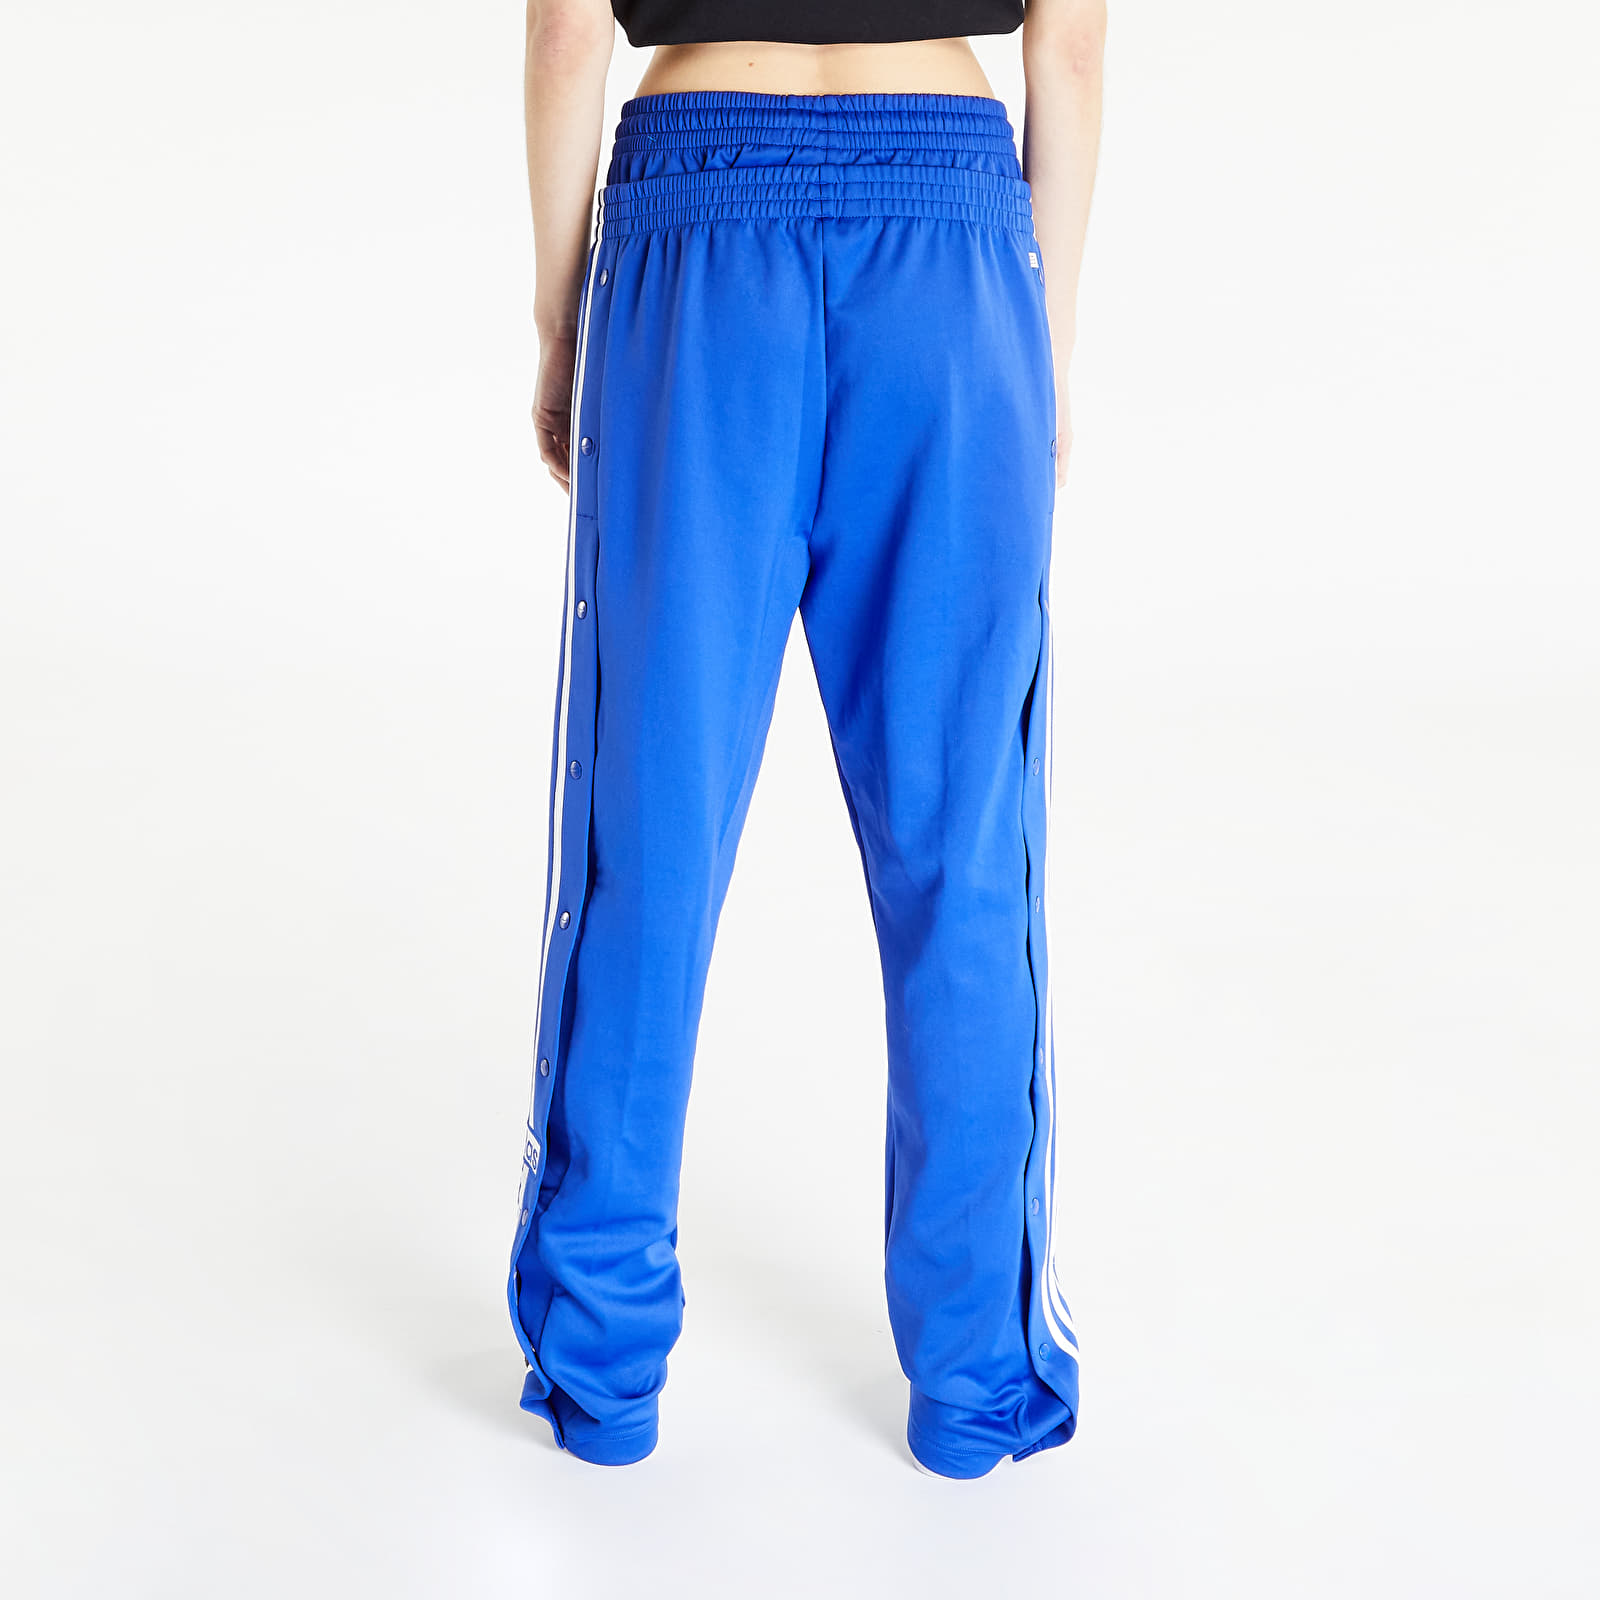 Jogginghosen adidas Originals Always Original Pants | Adibreak Queens Lucid Blue